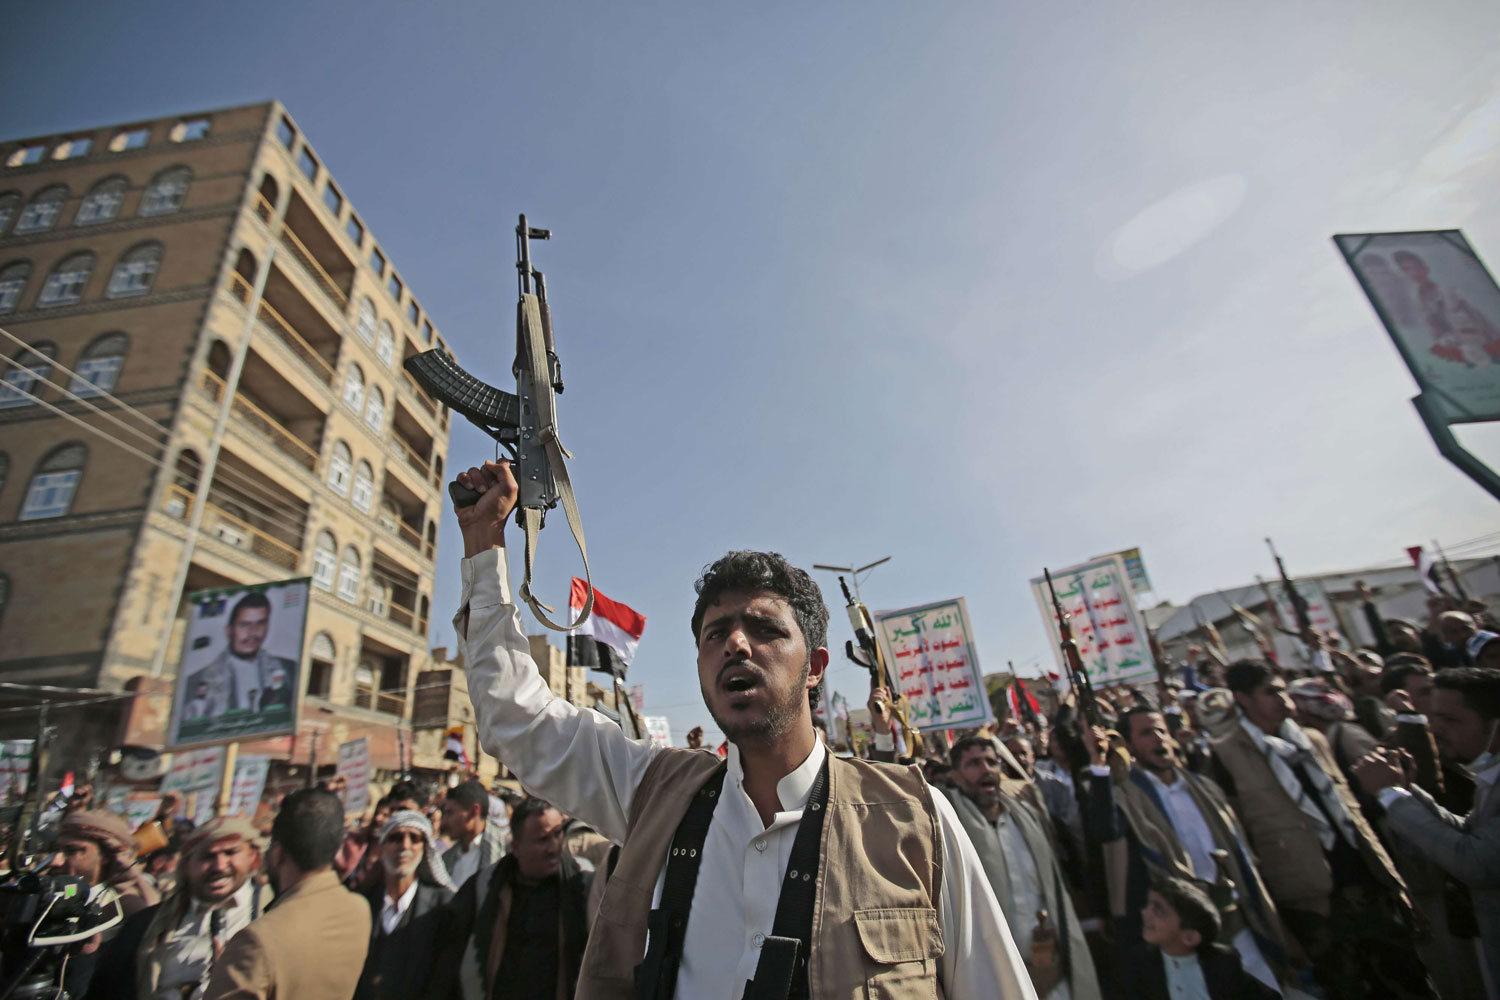 امريكا تؤكد تفويت الحوثيين الفرصة لإثبات التزامهم بالسلام في اليمن وماذا حدث اليوم في مجلس الامن؟